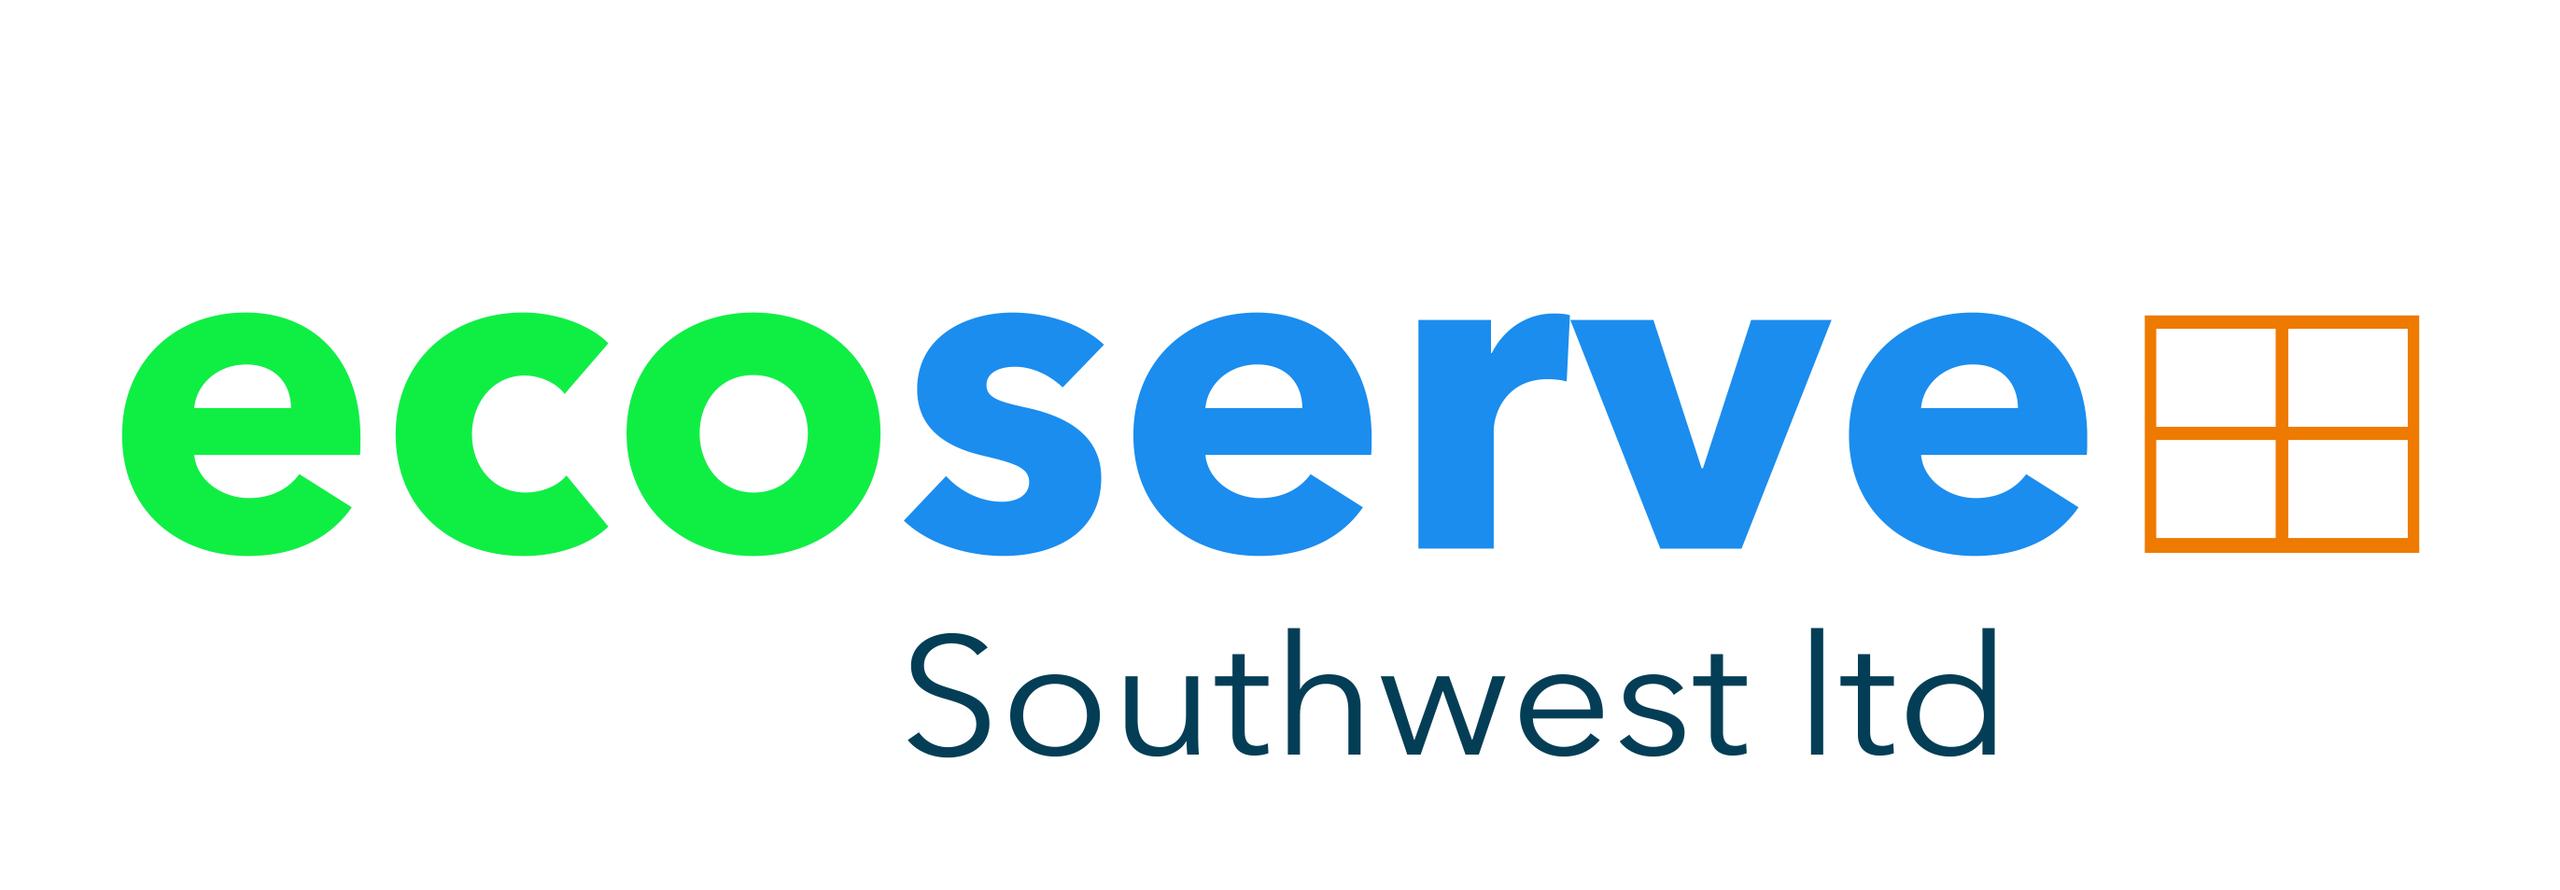 Ecoserve Southwest Ltd